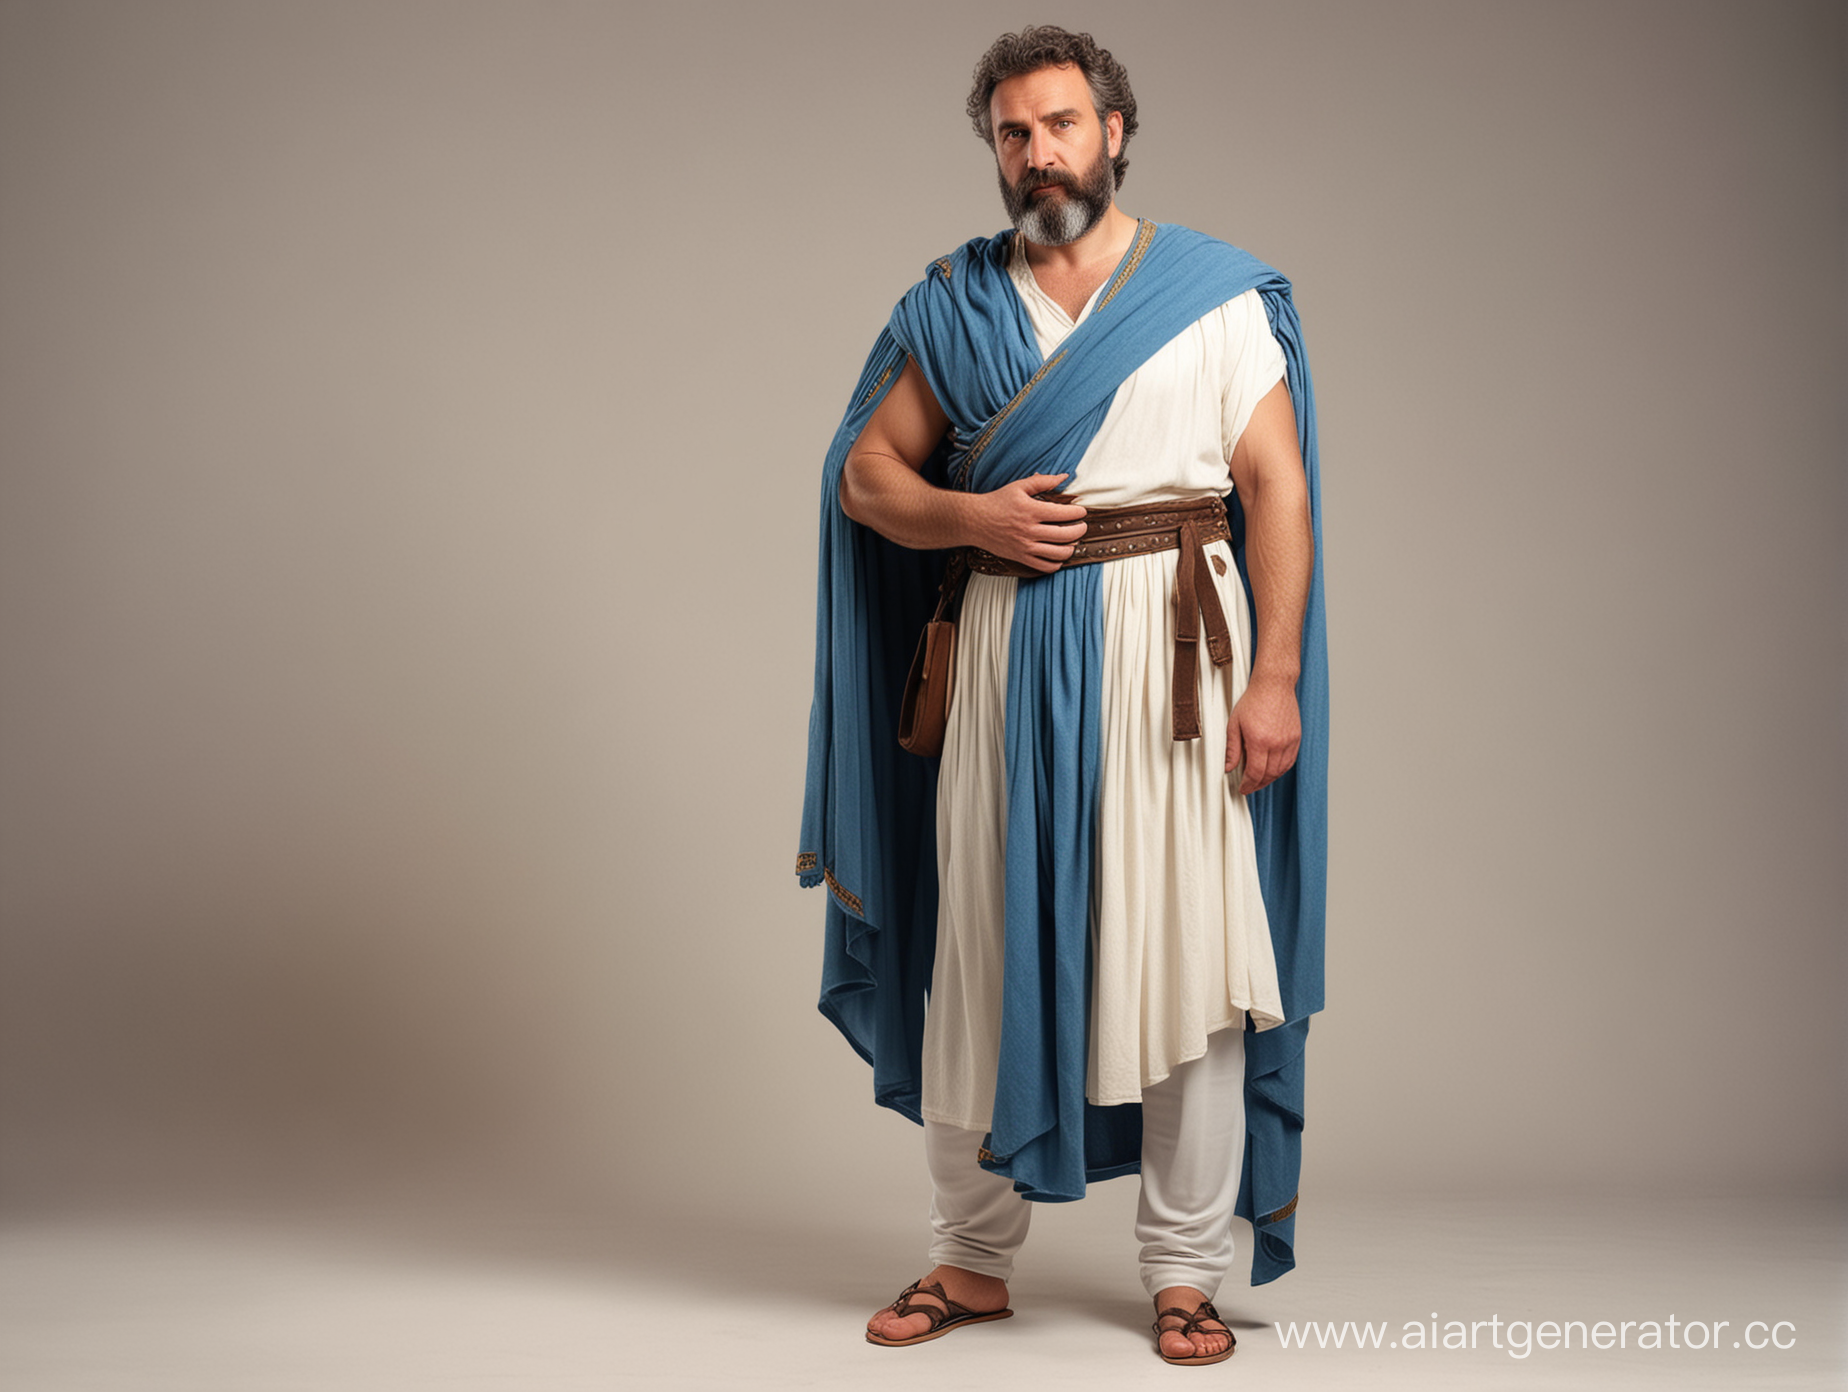 Полный рост, мужчина средних лет в одежде, как у древнего грека. В стиле средневековья